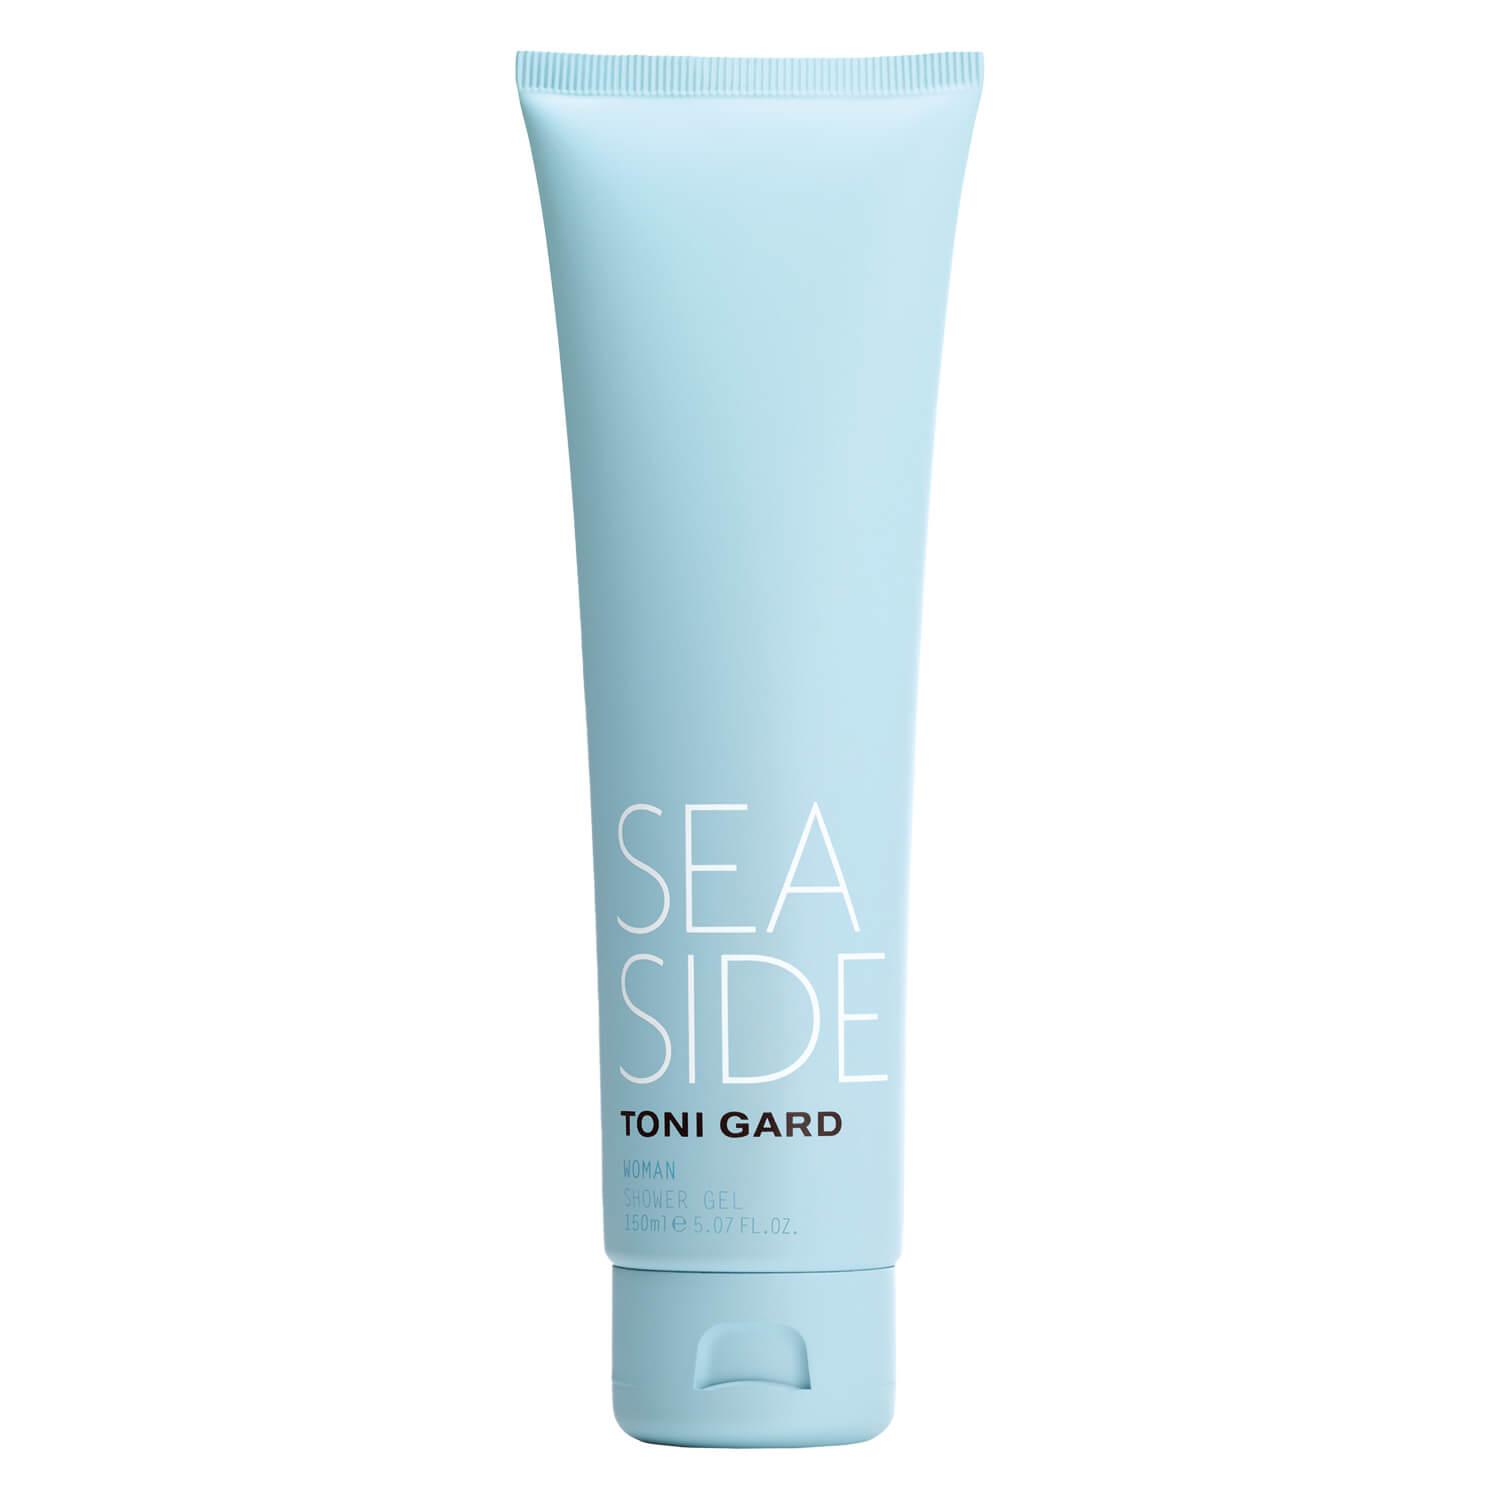 TONI GARD - Sea Side Woman Shower Gel